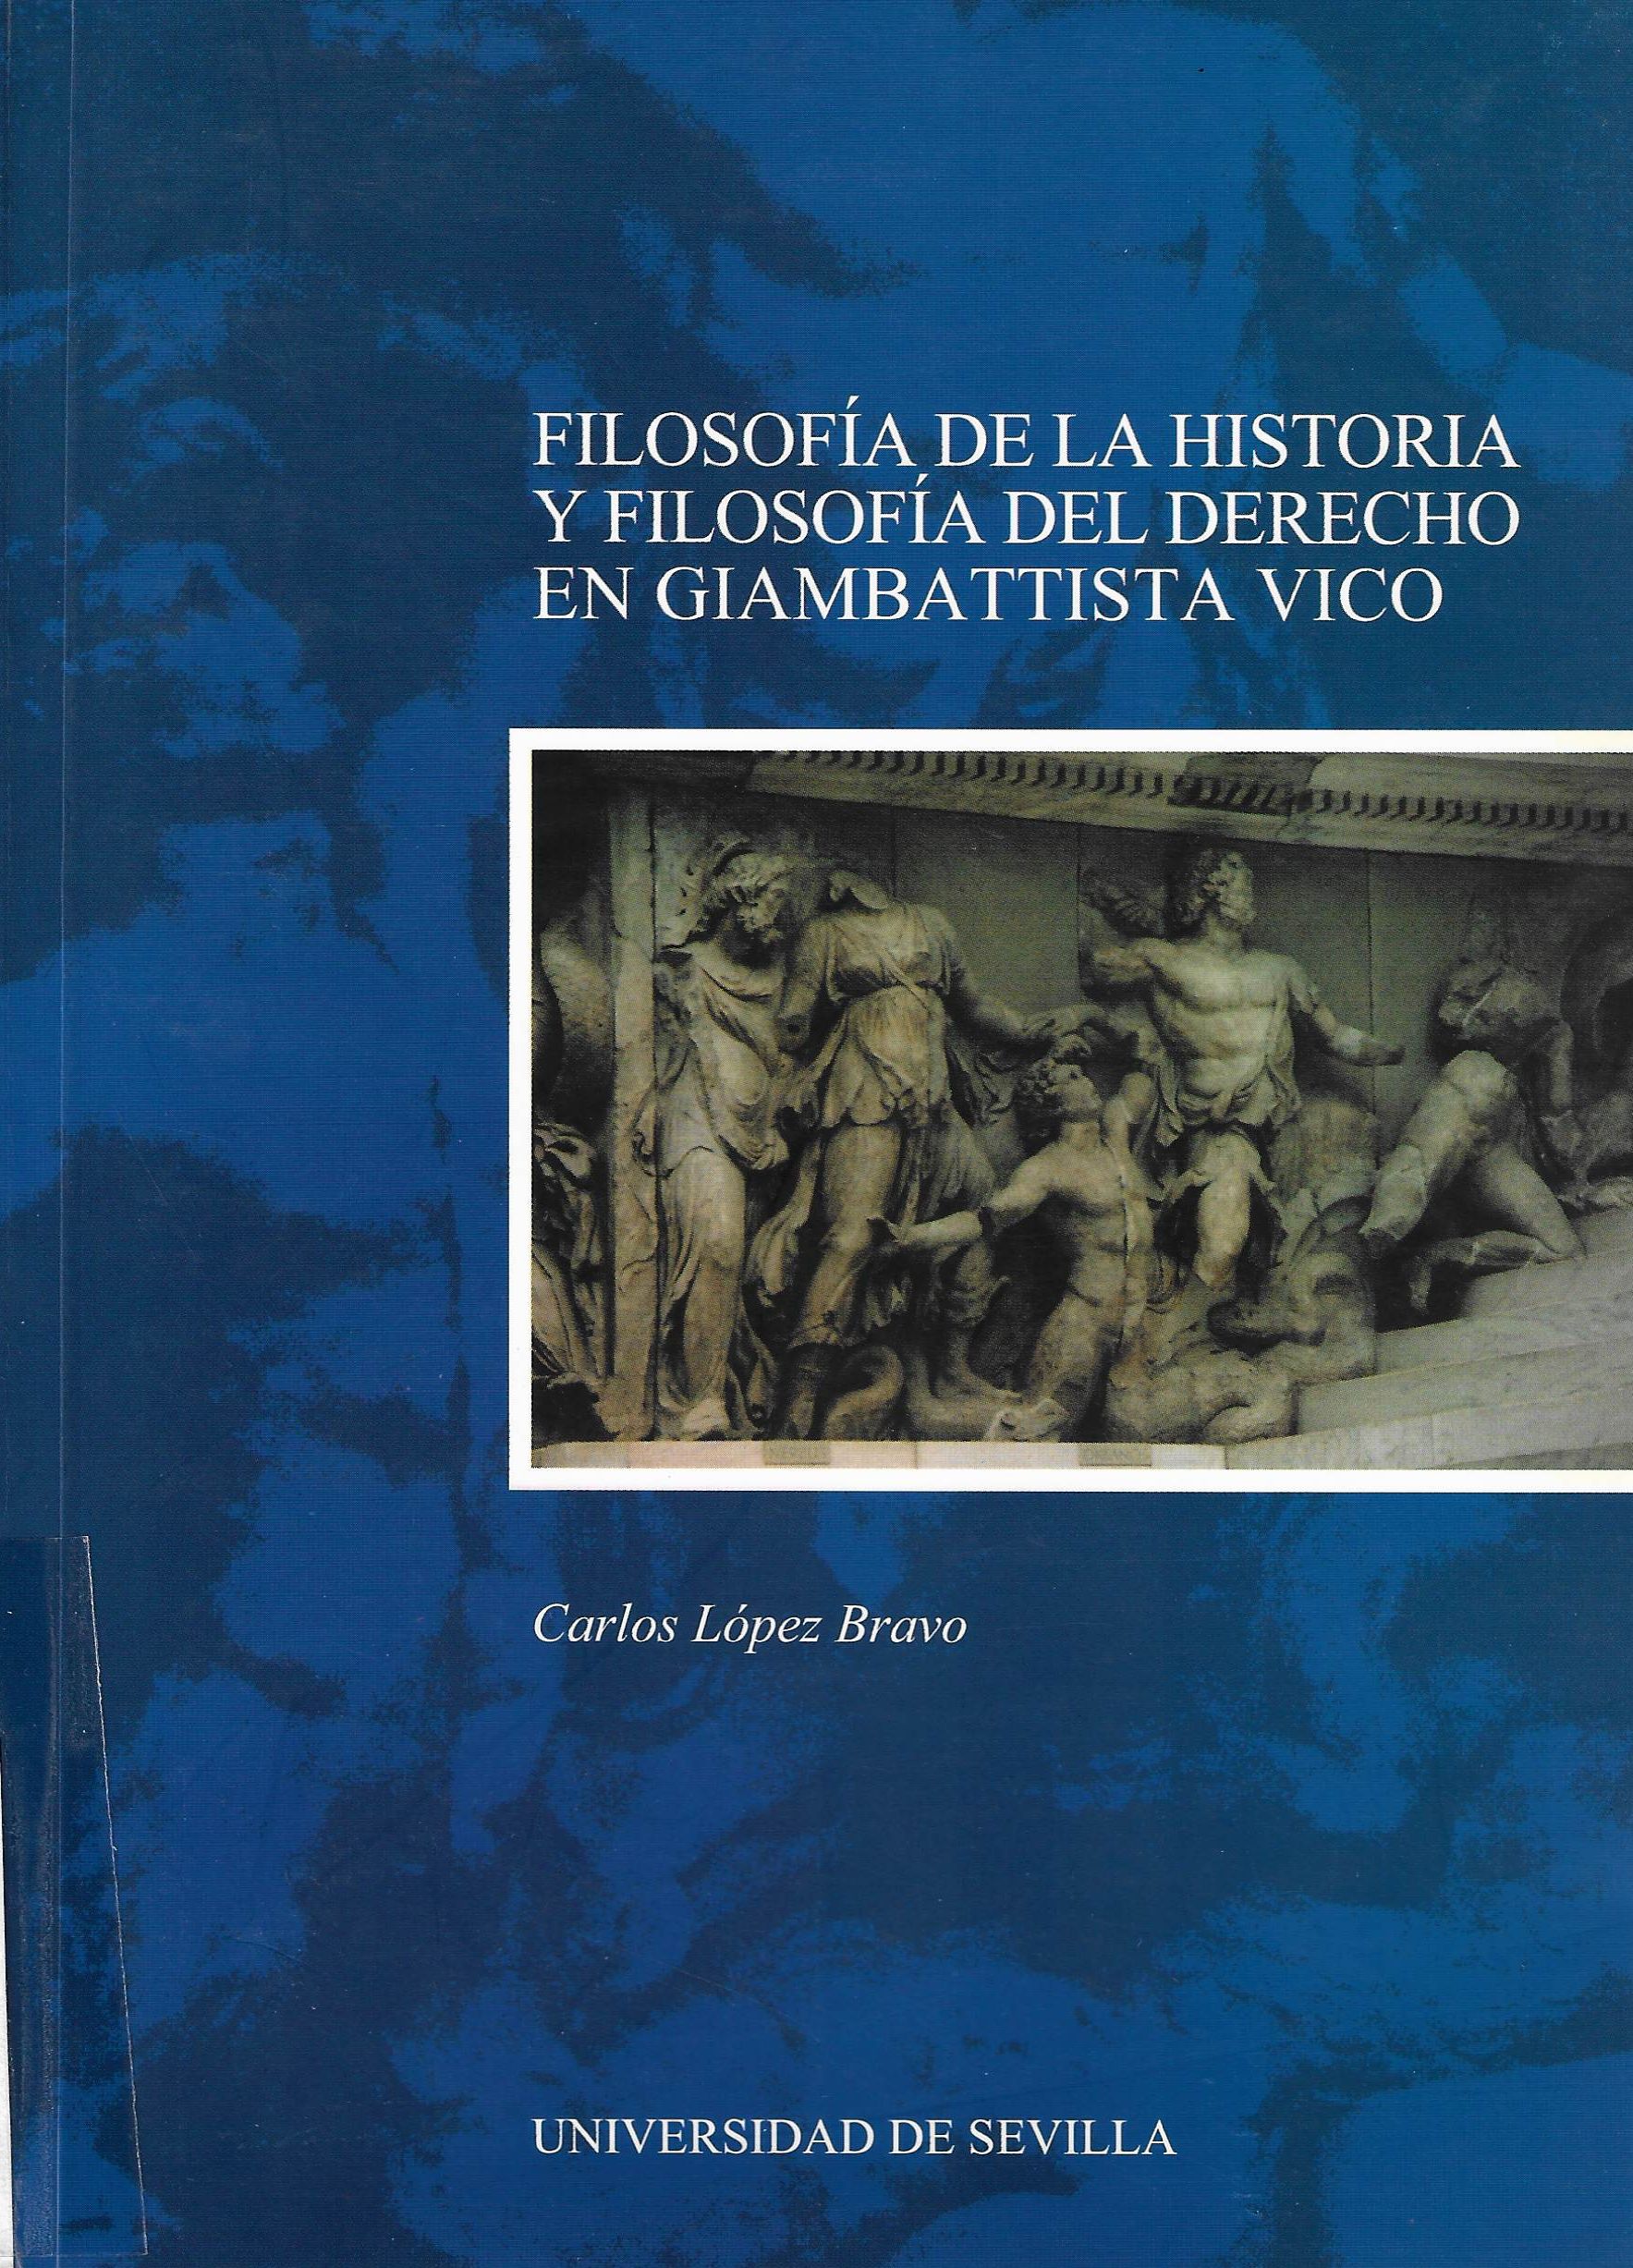 Imagen de portada del libro Filosofía de la historia y filosofía del derecho en Giambattista Vico